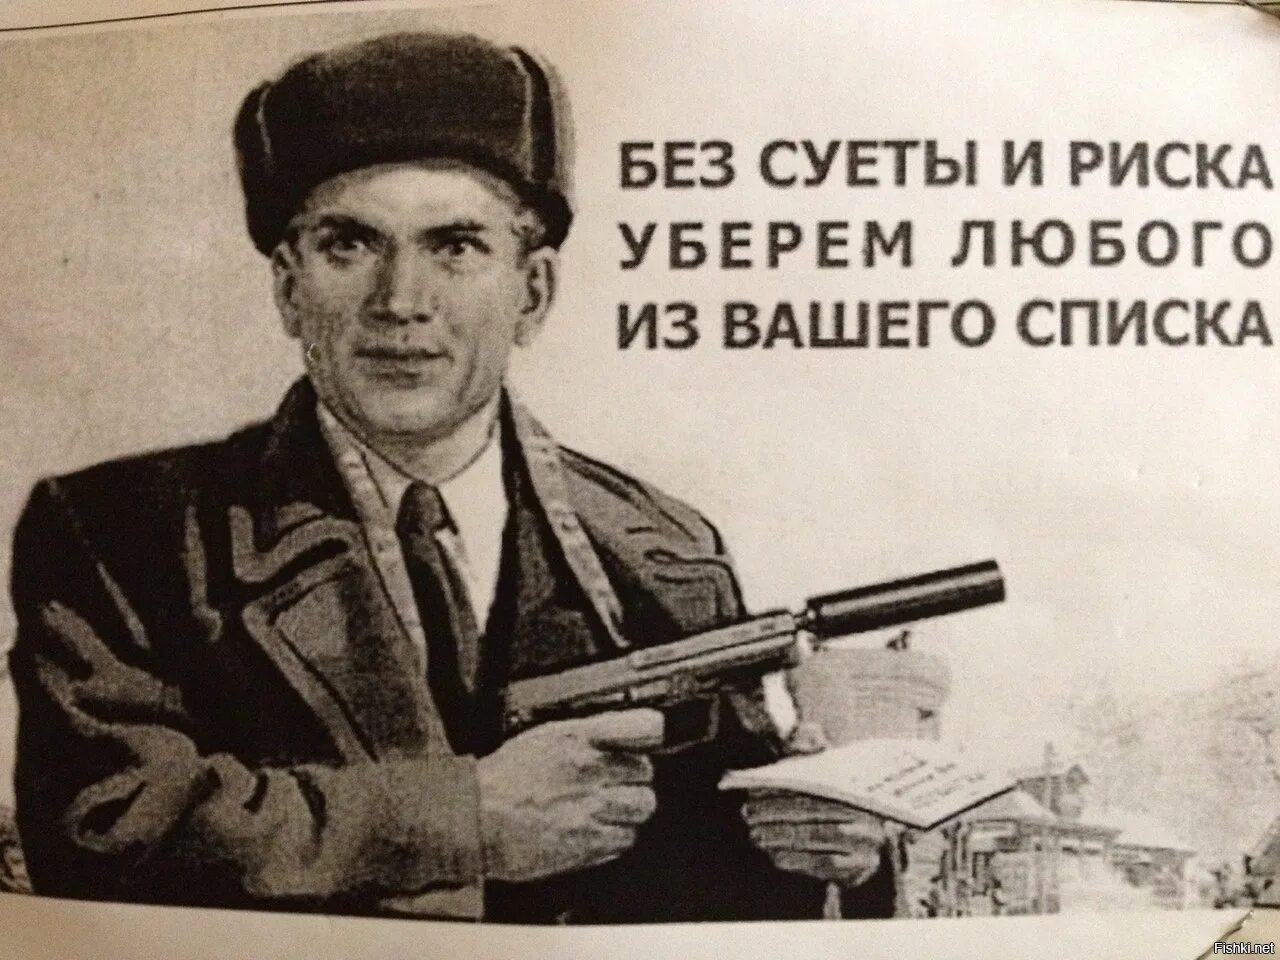 Смешные плакаты. Без суеты и риска уберём любого из вашего списка. Прикольные советские плакаты. Без суеты и риска уберём любого из вашего списка плакат.